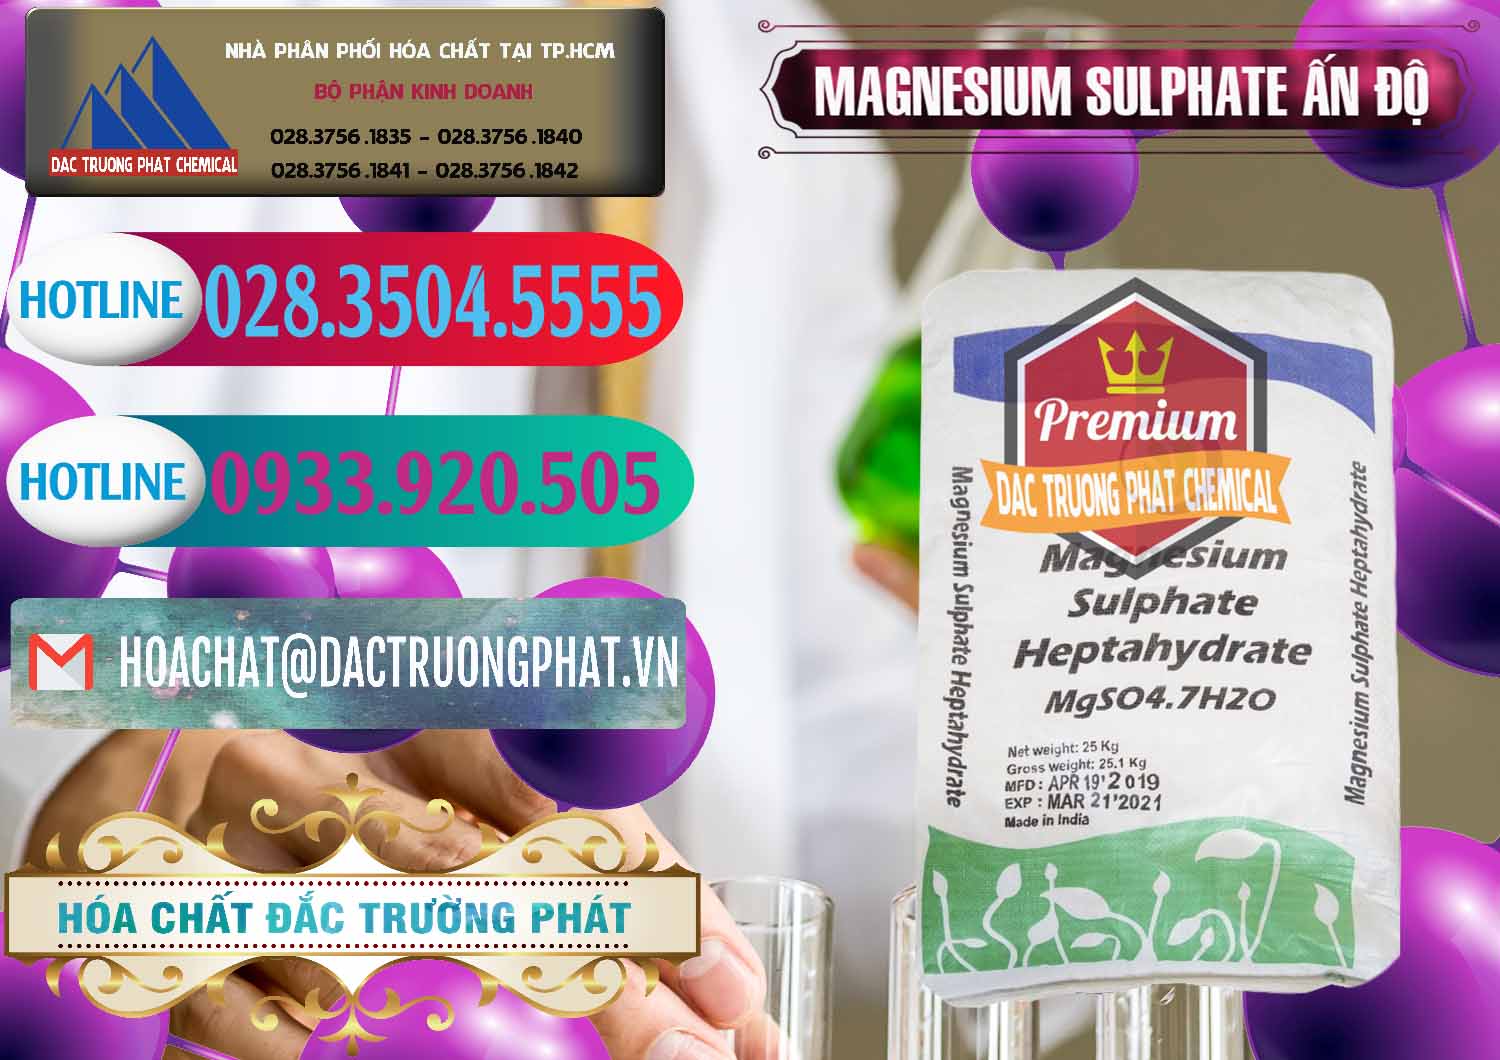 Công ty chuyên bán _ cung cấp MGSO4.7H2O – Magnesium Sulphate Heptahydrate Ấn Độ India - 0362 - Nhà phân phối ( cung ứng ) hóa chất tại TP.HCM - truongphat.vn